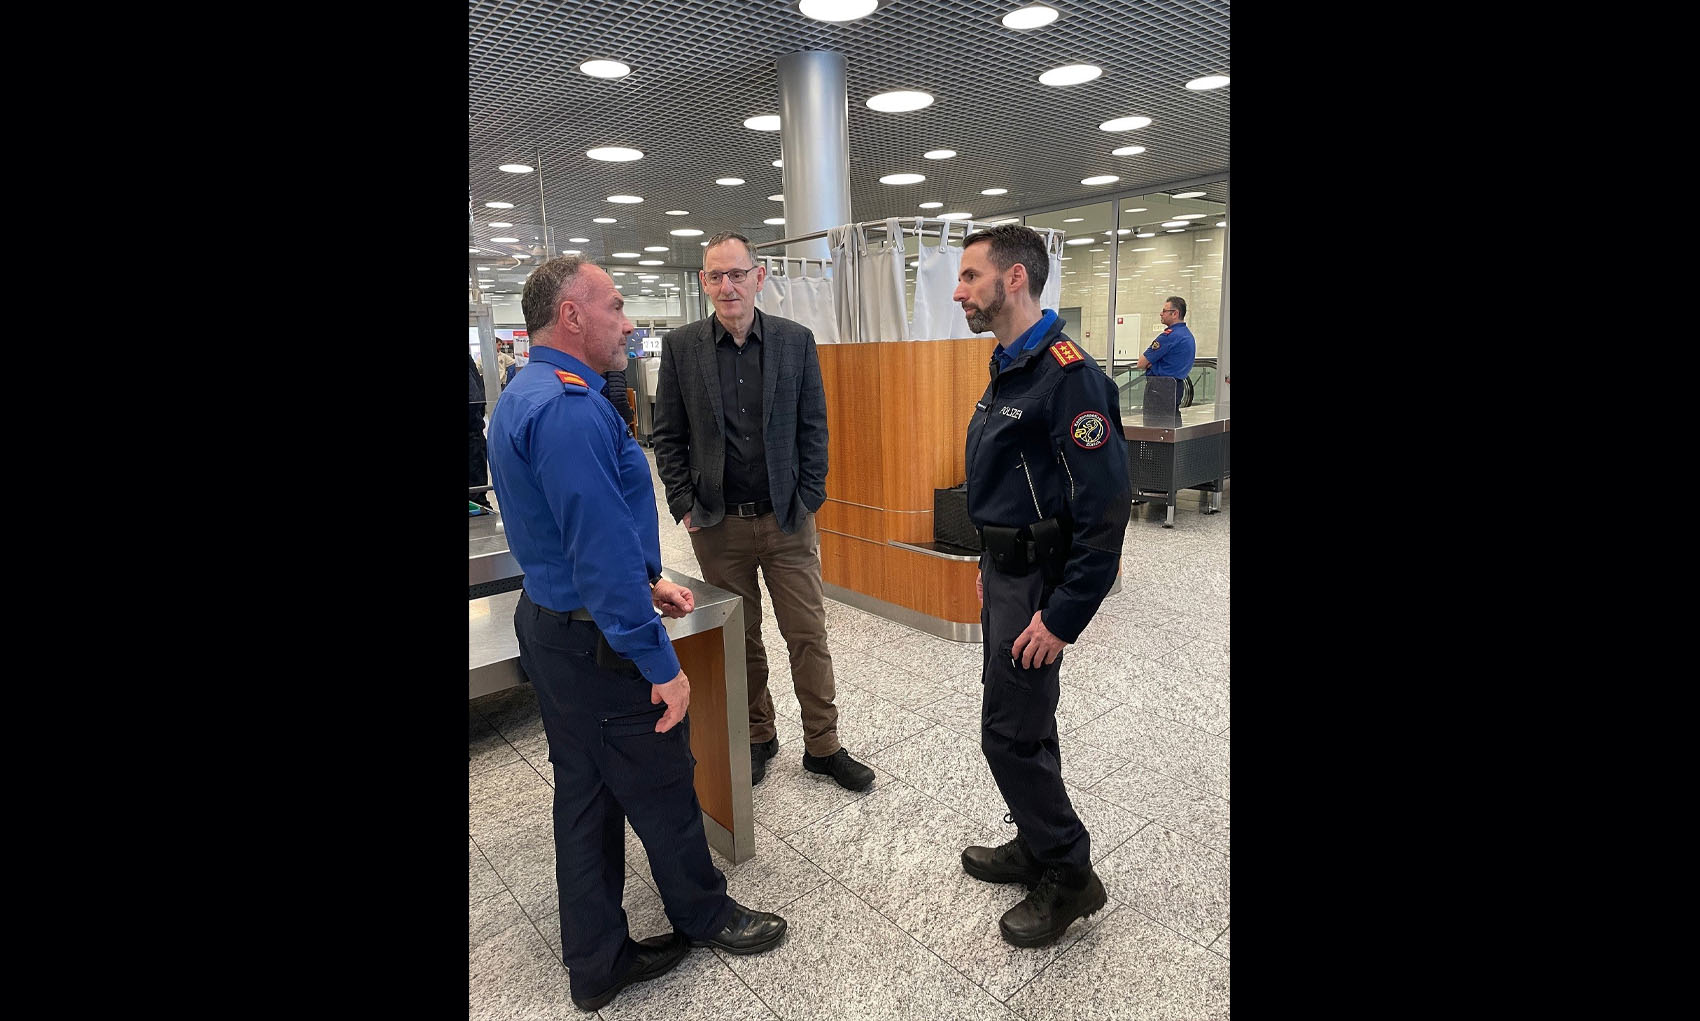 Mario Fehr und Marius Weyermann im Gespräch mit einem Kapo-Mitarbeiter am Flughafen. 